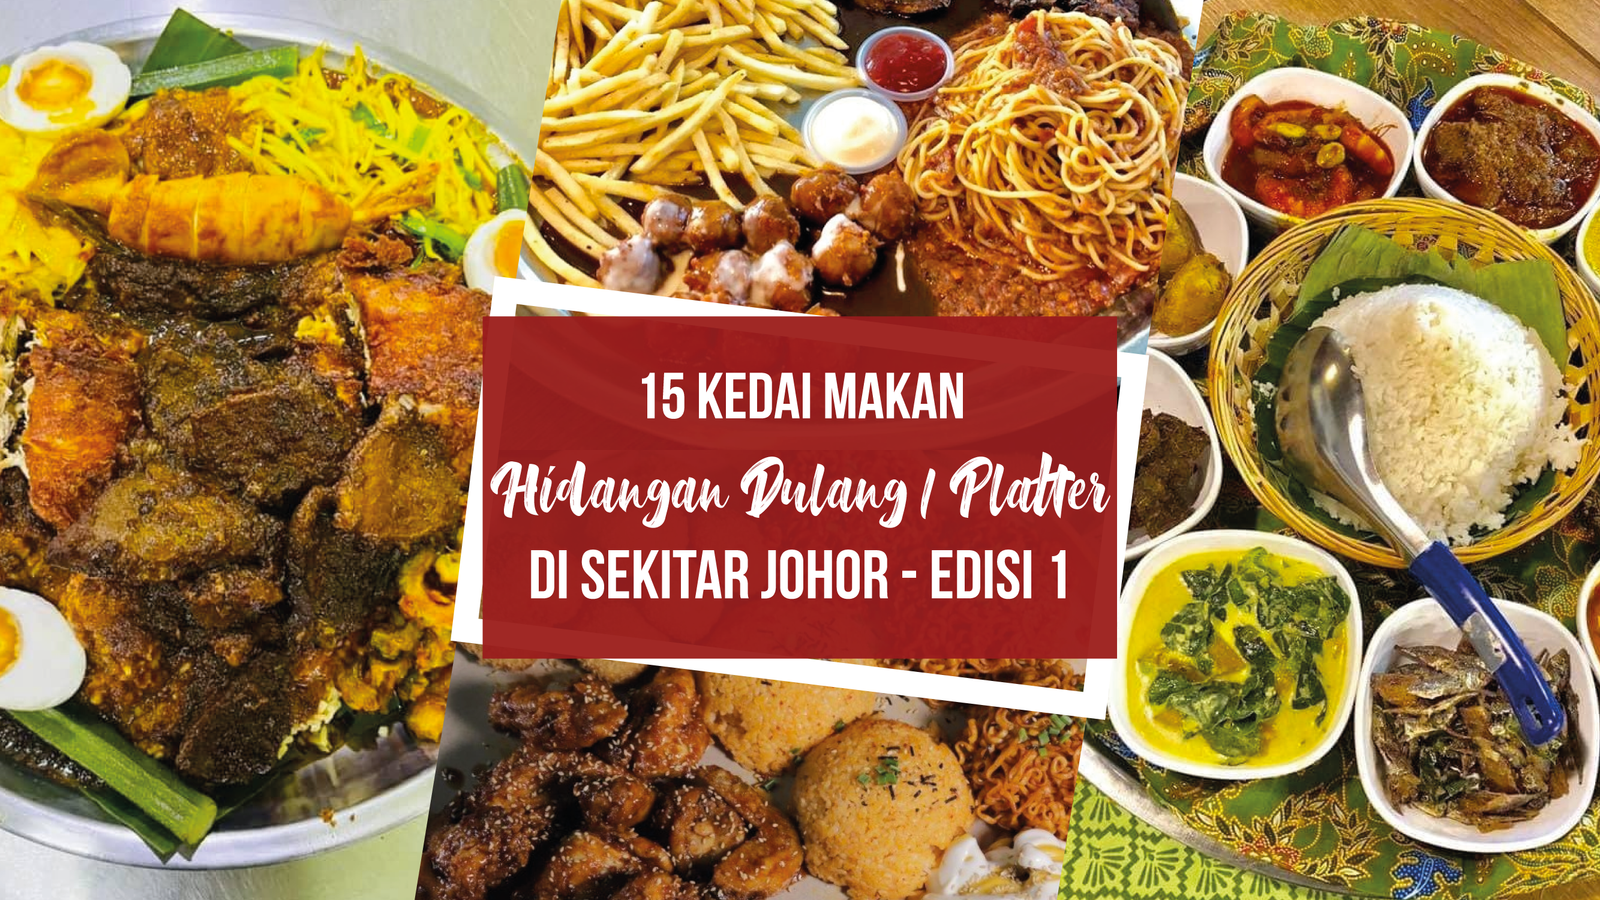 15 kedai makan hidangan Dulang/Platter istimewa ramadhan - Edisi 1